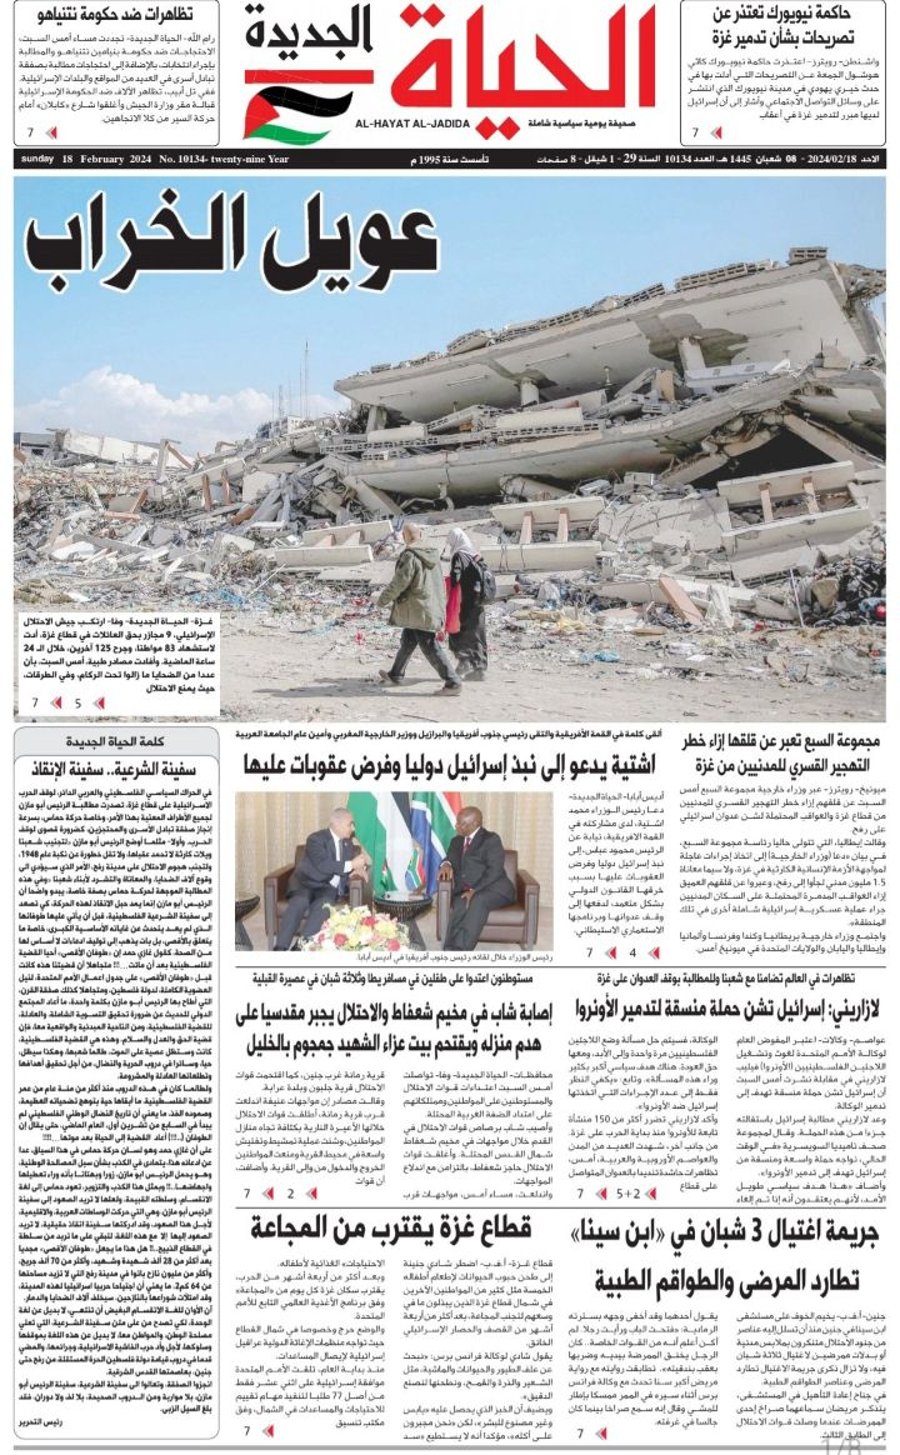 "יללת החורבן": העיתונים הפלסטיניים חושפים מה באמת קורה בעזה 